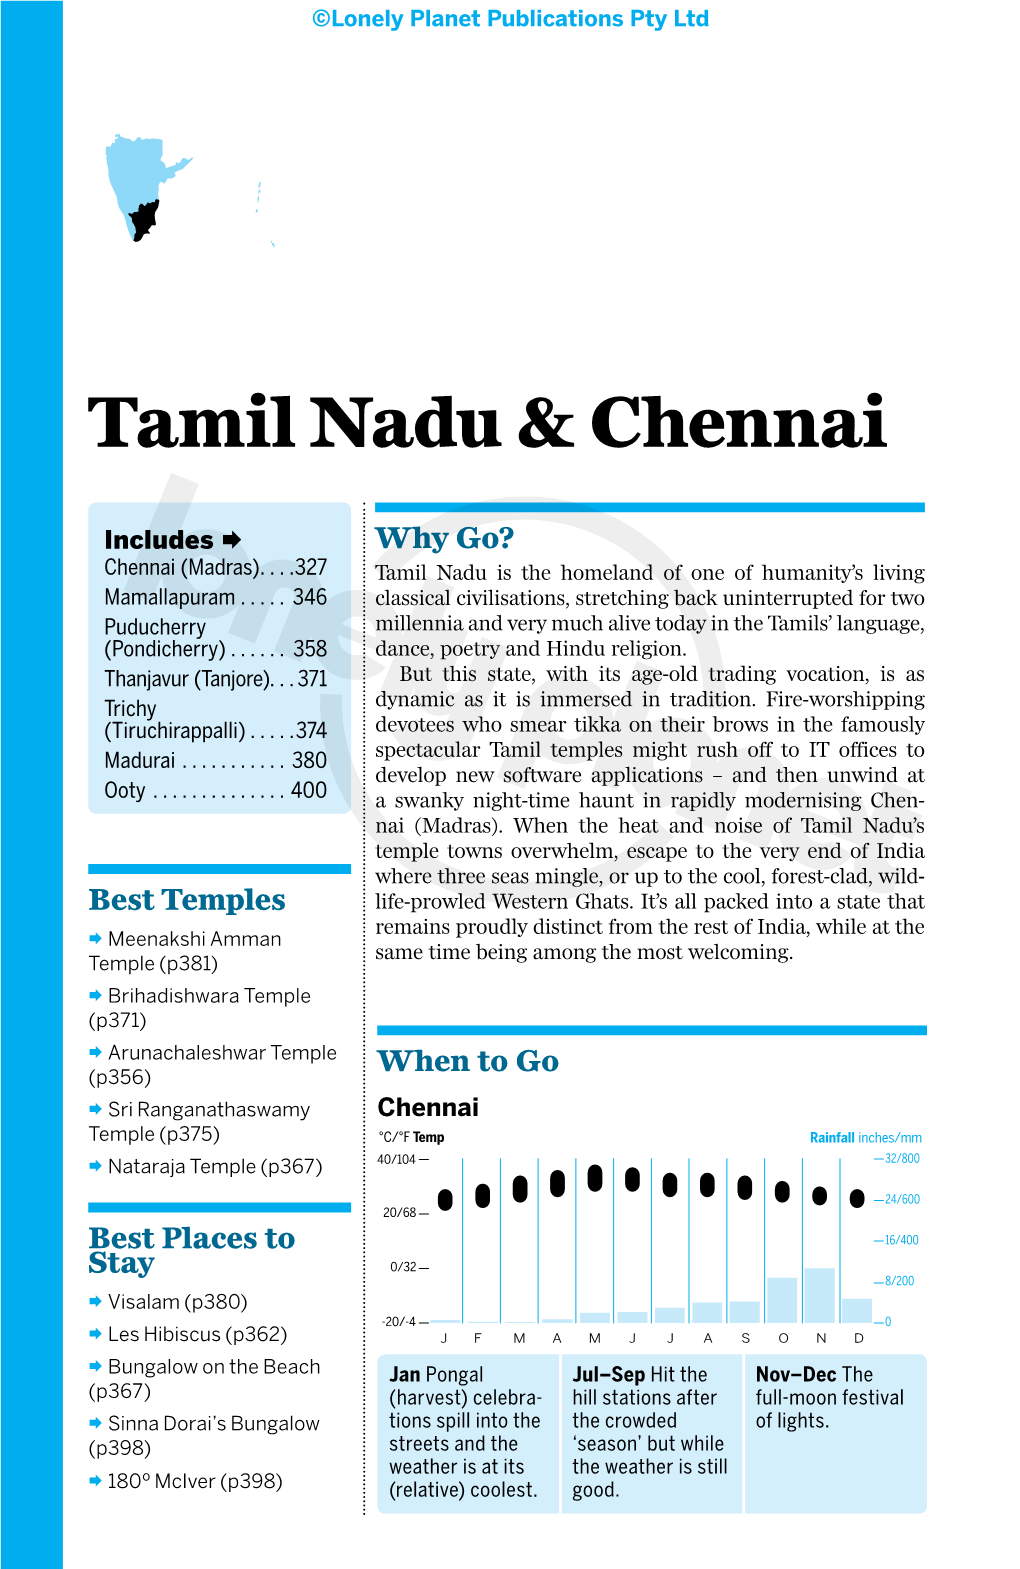 Tamil Nadu & Chennai